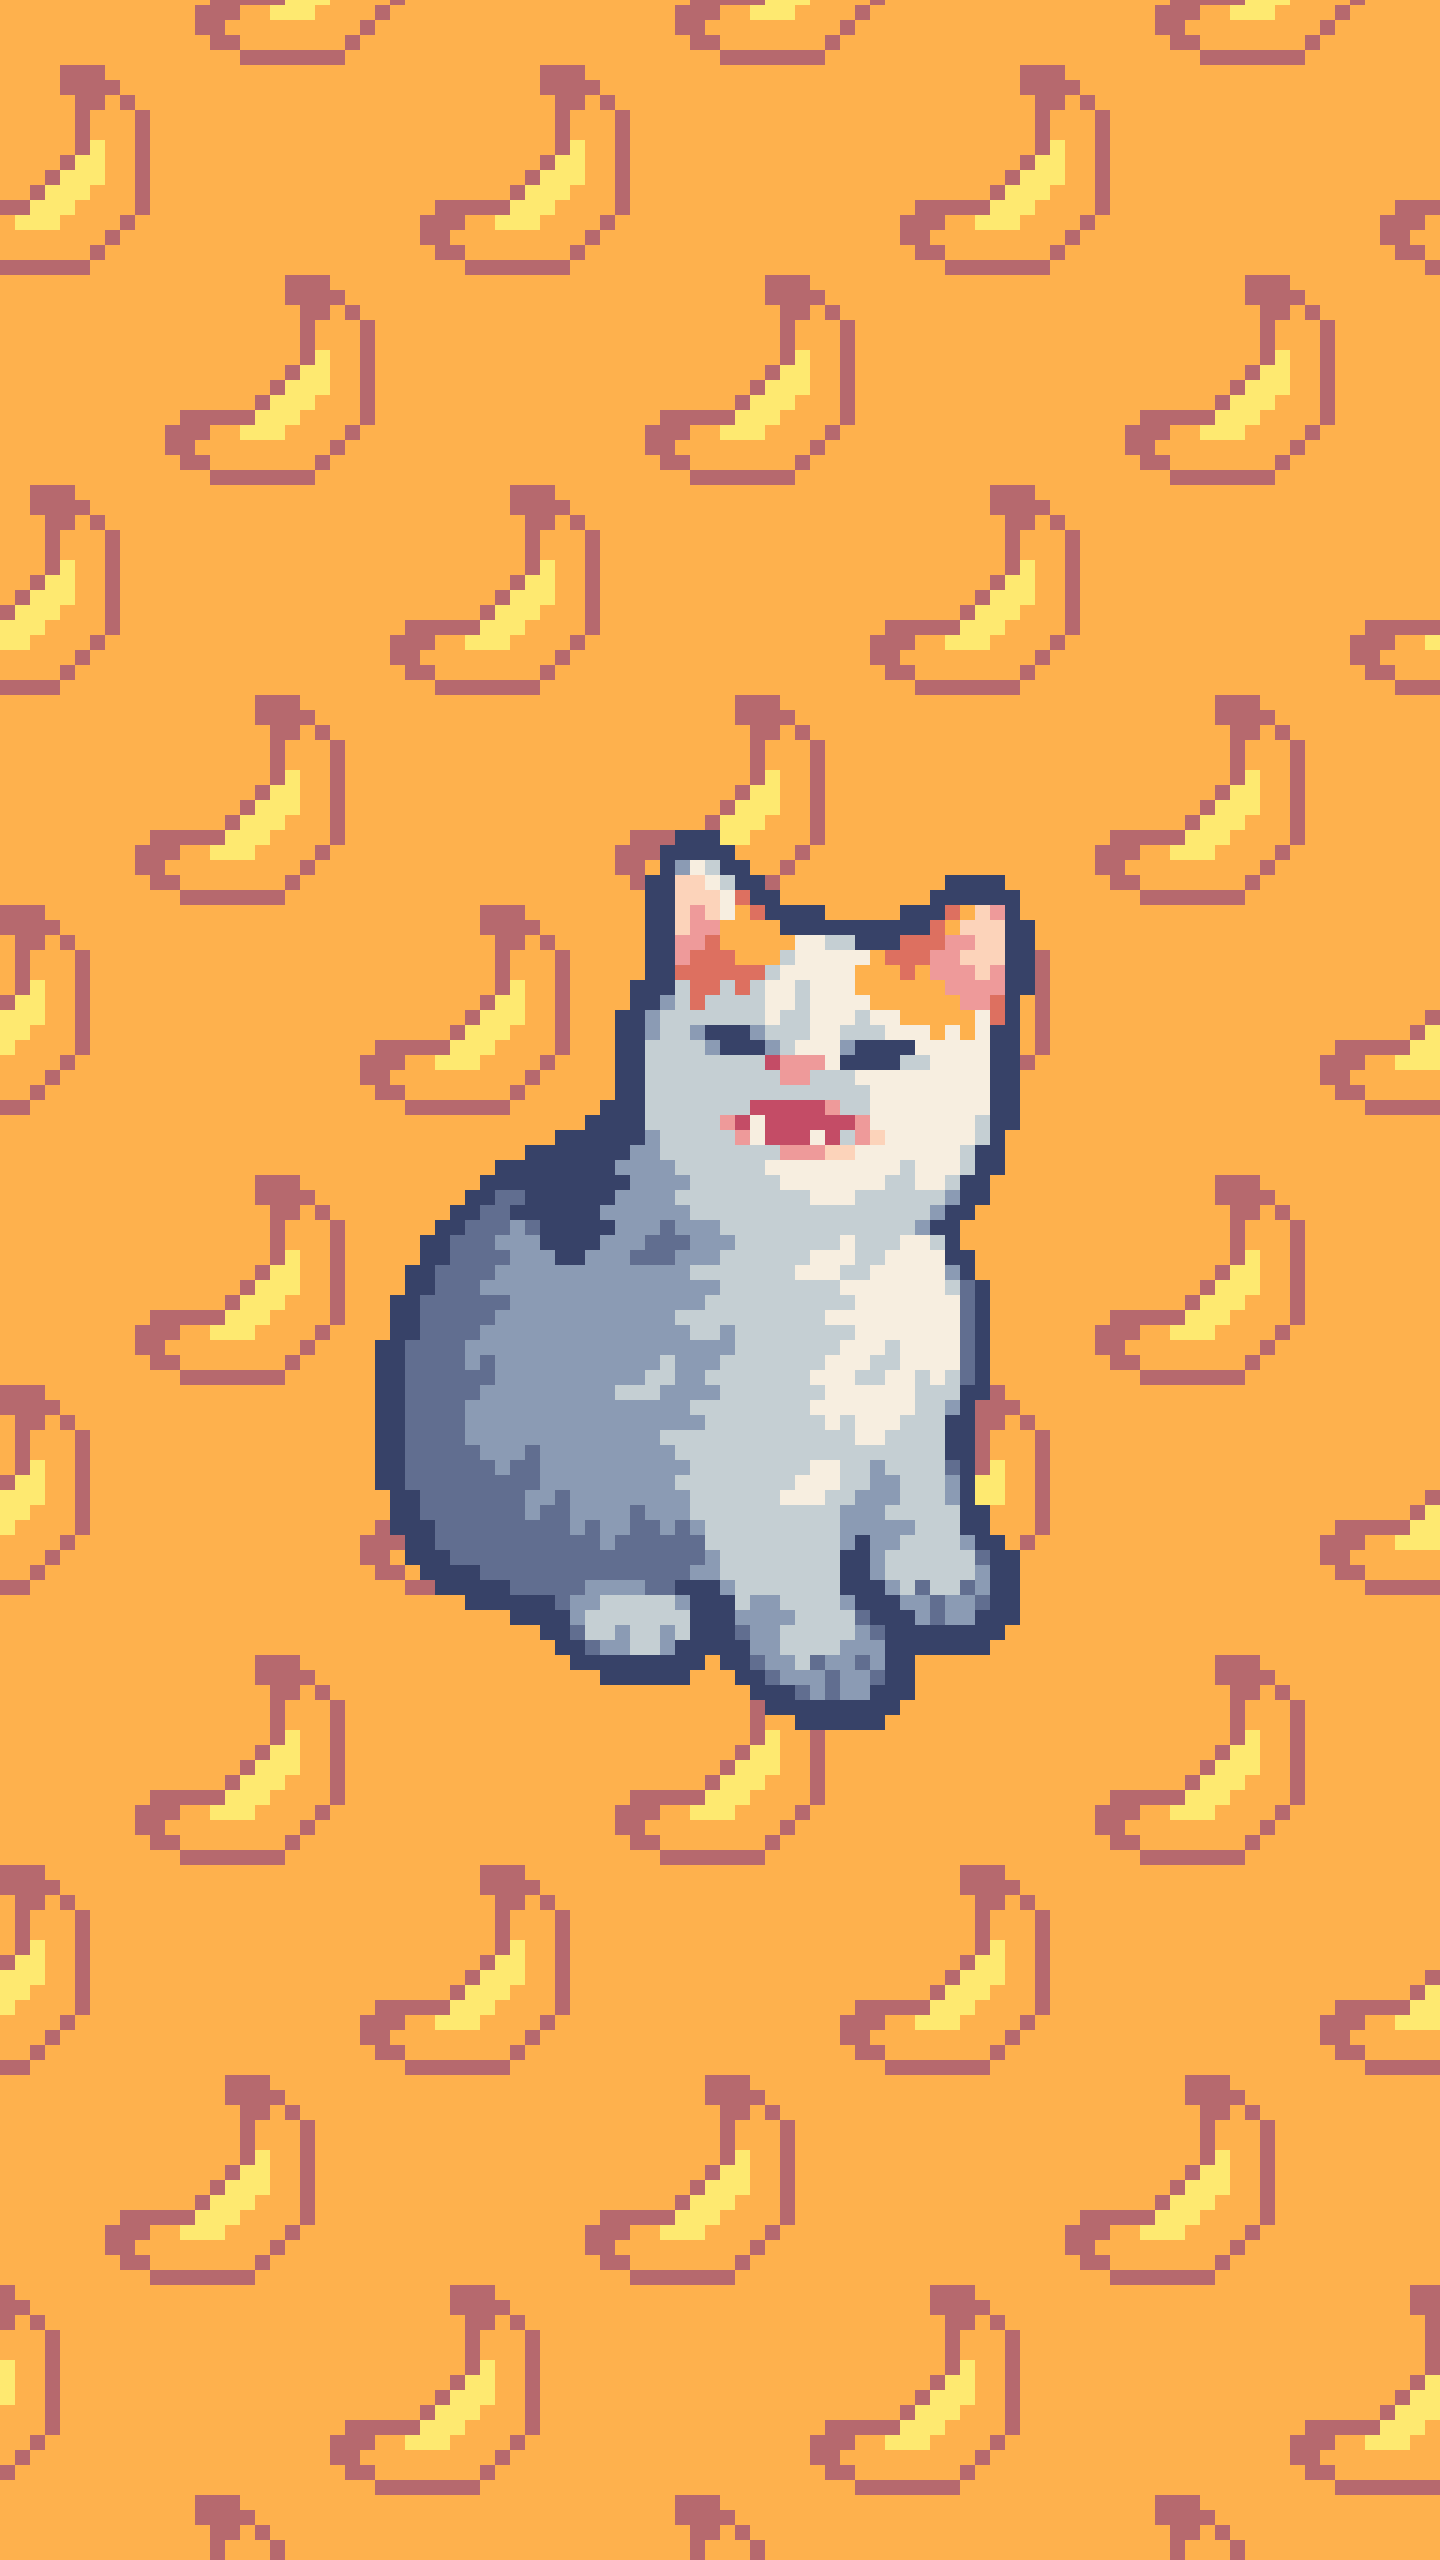 cat no pixel bananas (converted for phone wallpaper) (OC